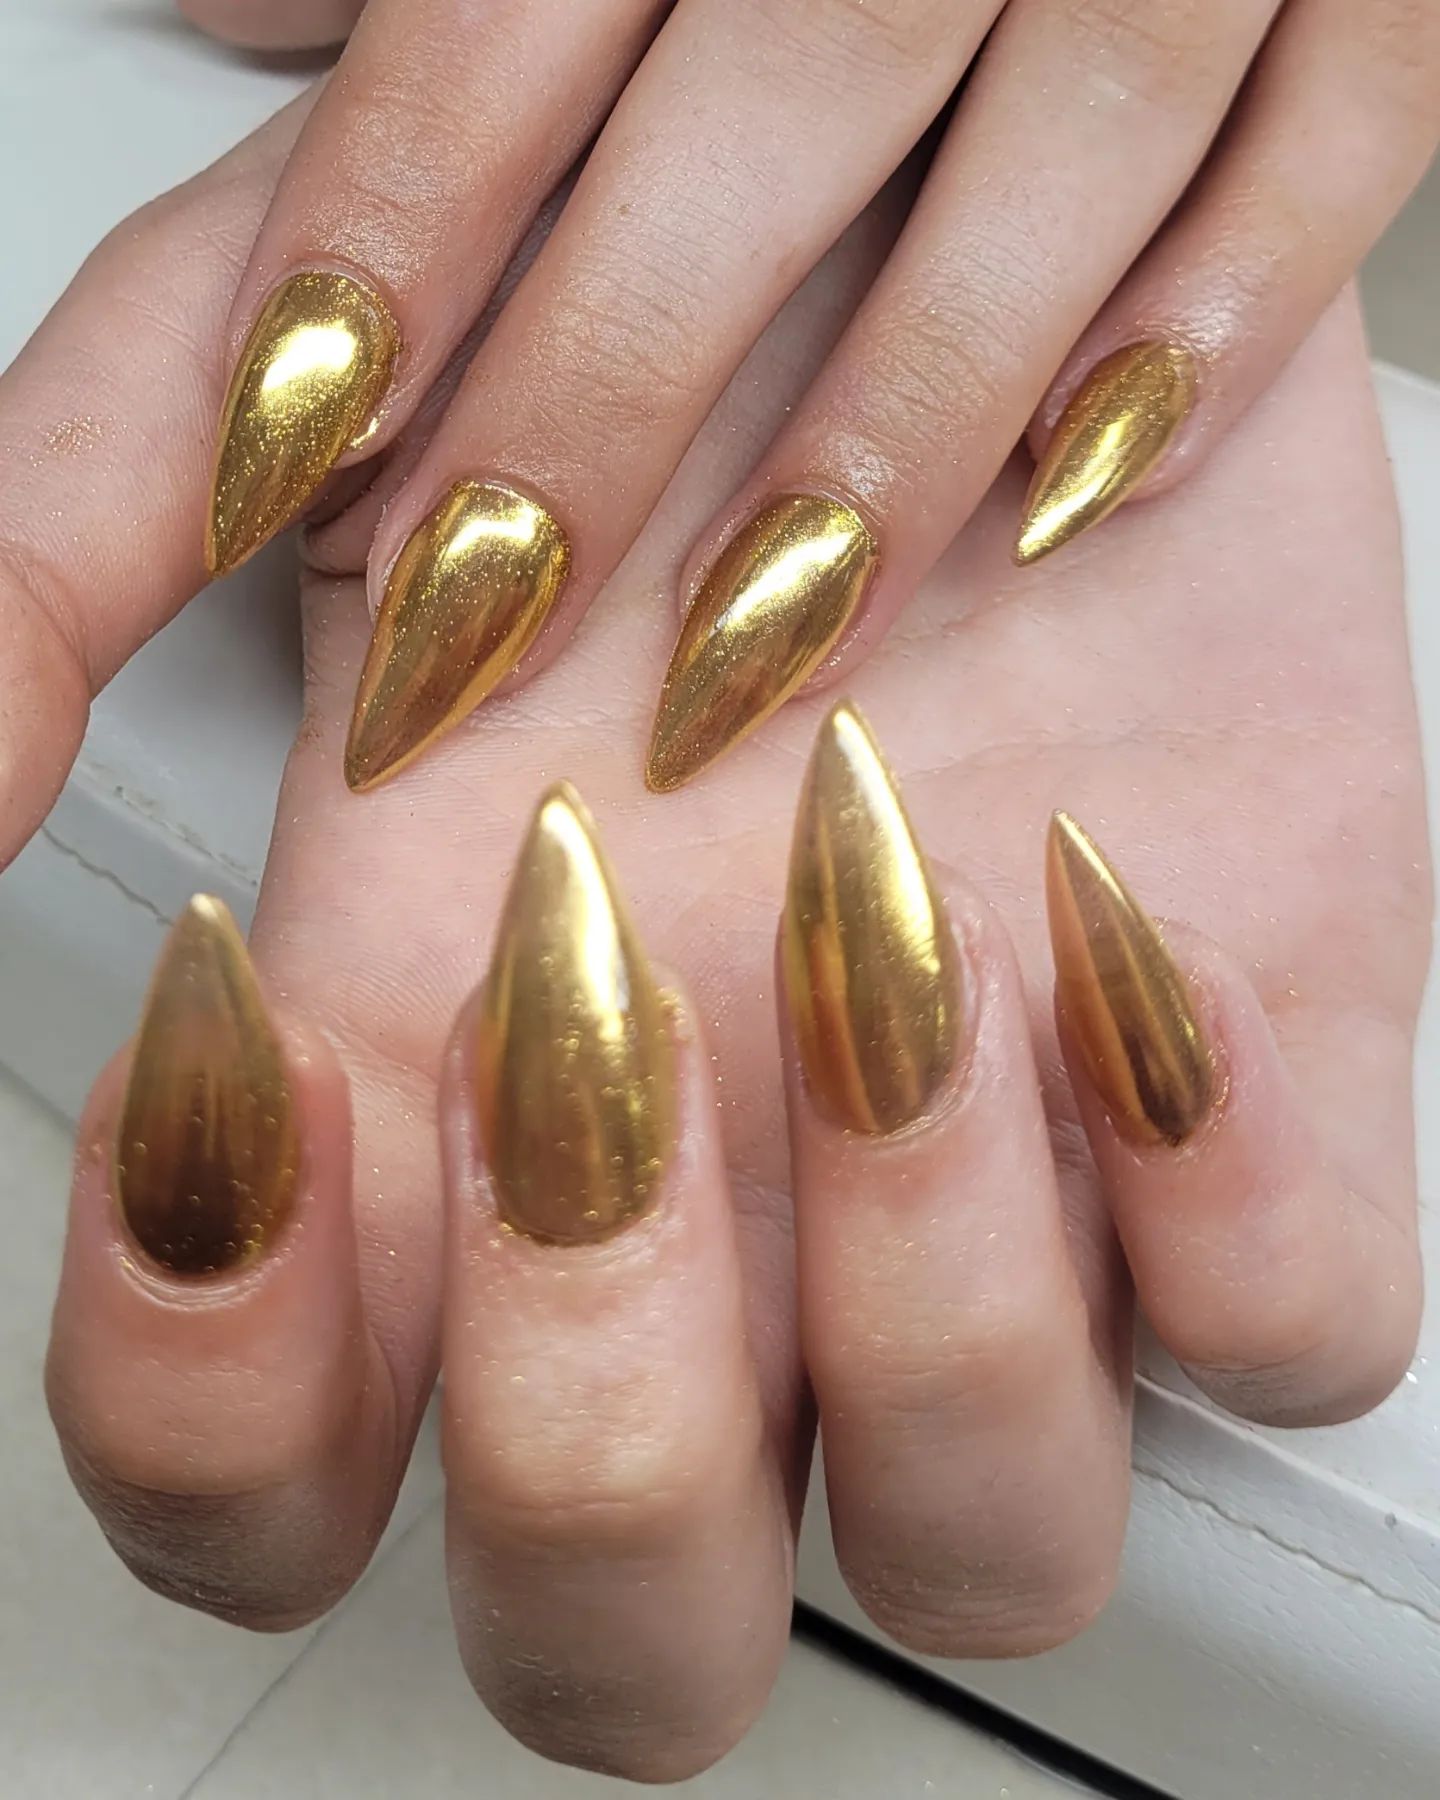 El oro proporciona una apariencia rica, ¿no es así? Si estás de acuerdo con eso, aplica este esmalte de uñas cromado dorado para tu próxima manicura.